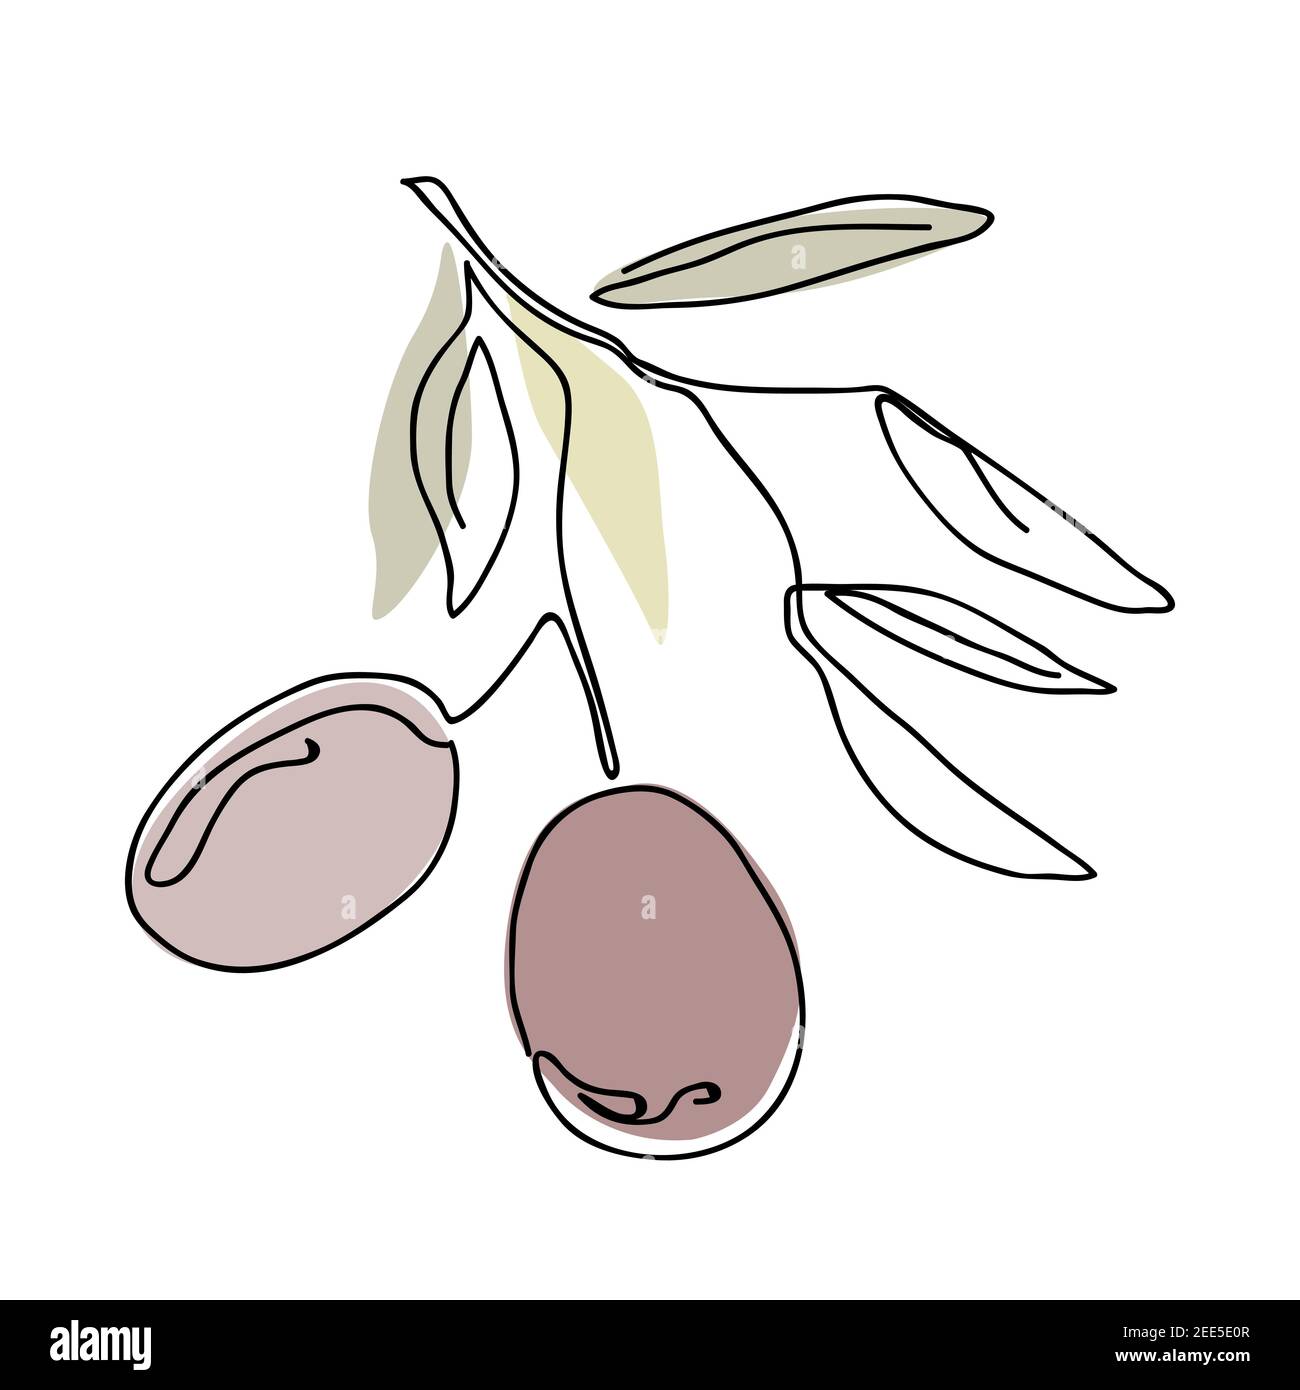 Un seul dessin de ligne continue de brunch aux fruits d'olive biologiques. Dessin moderne à une ligne dessin graphique illustration vectorielle Illustration de Vecteur